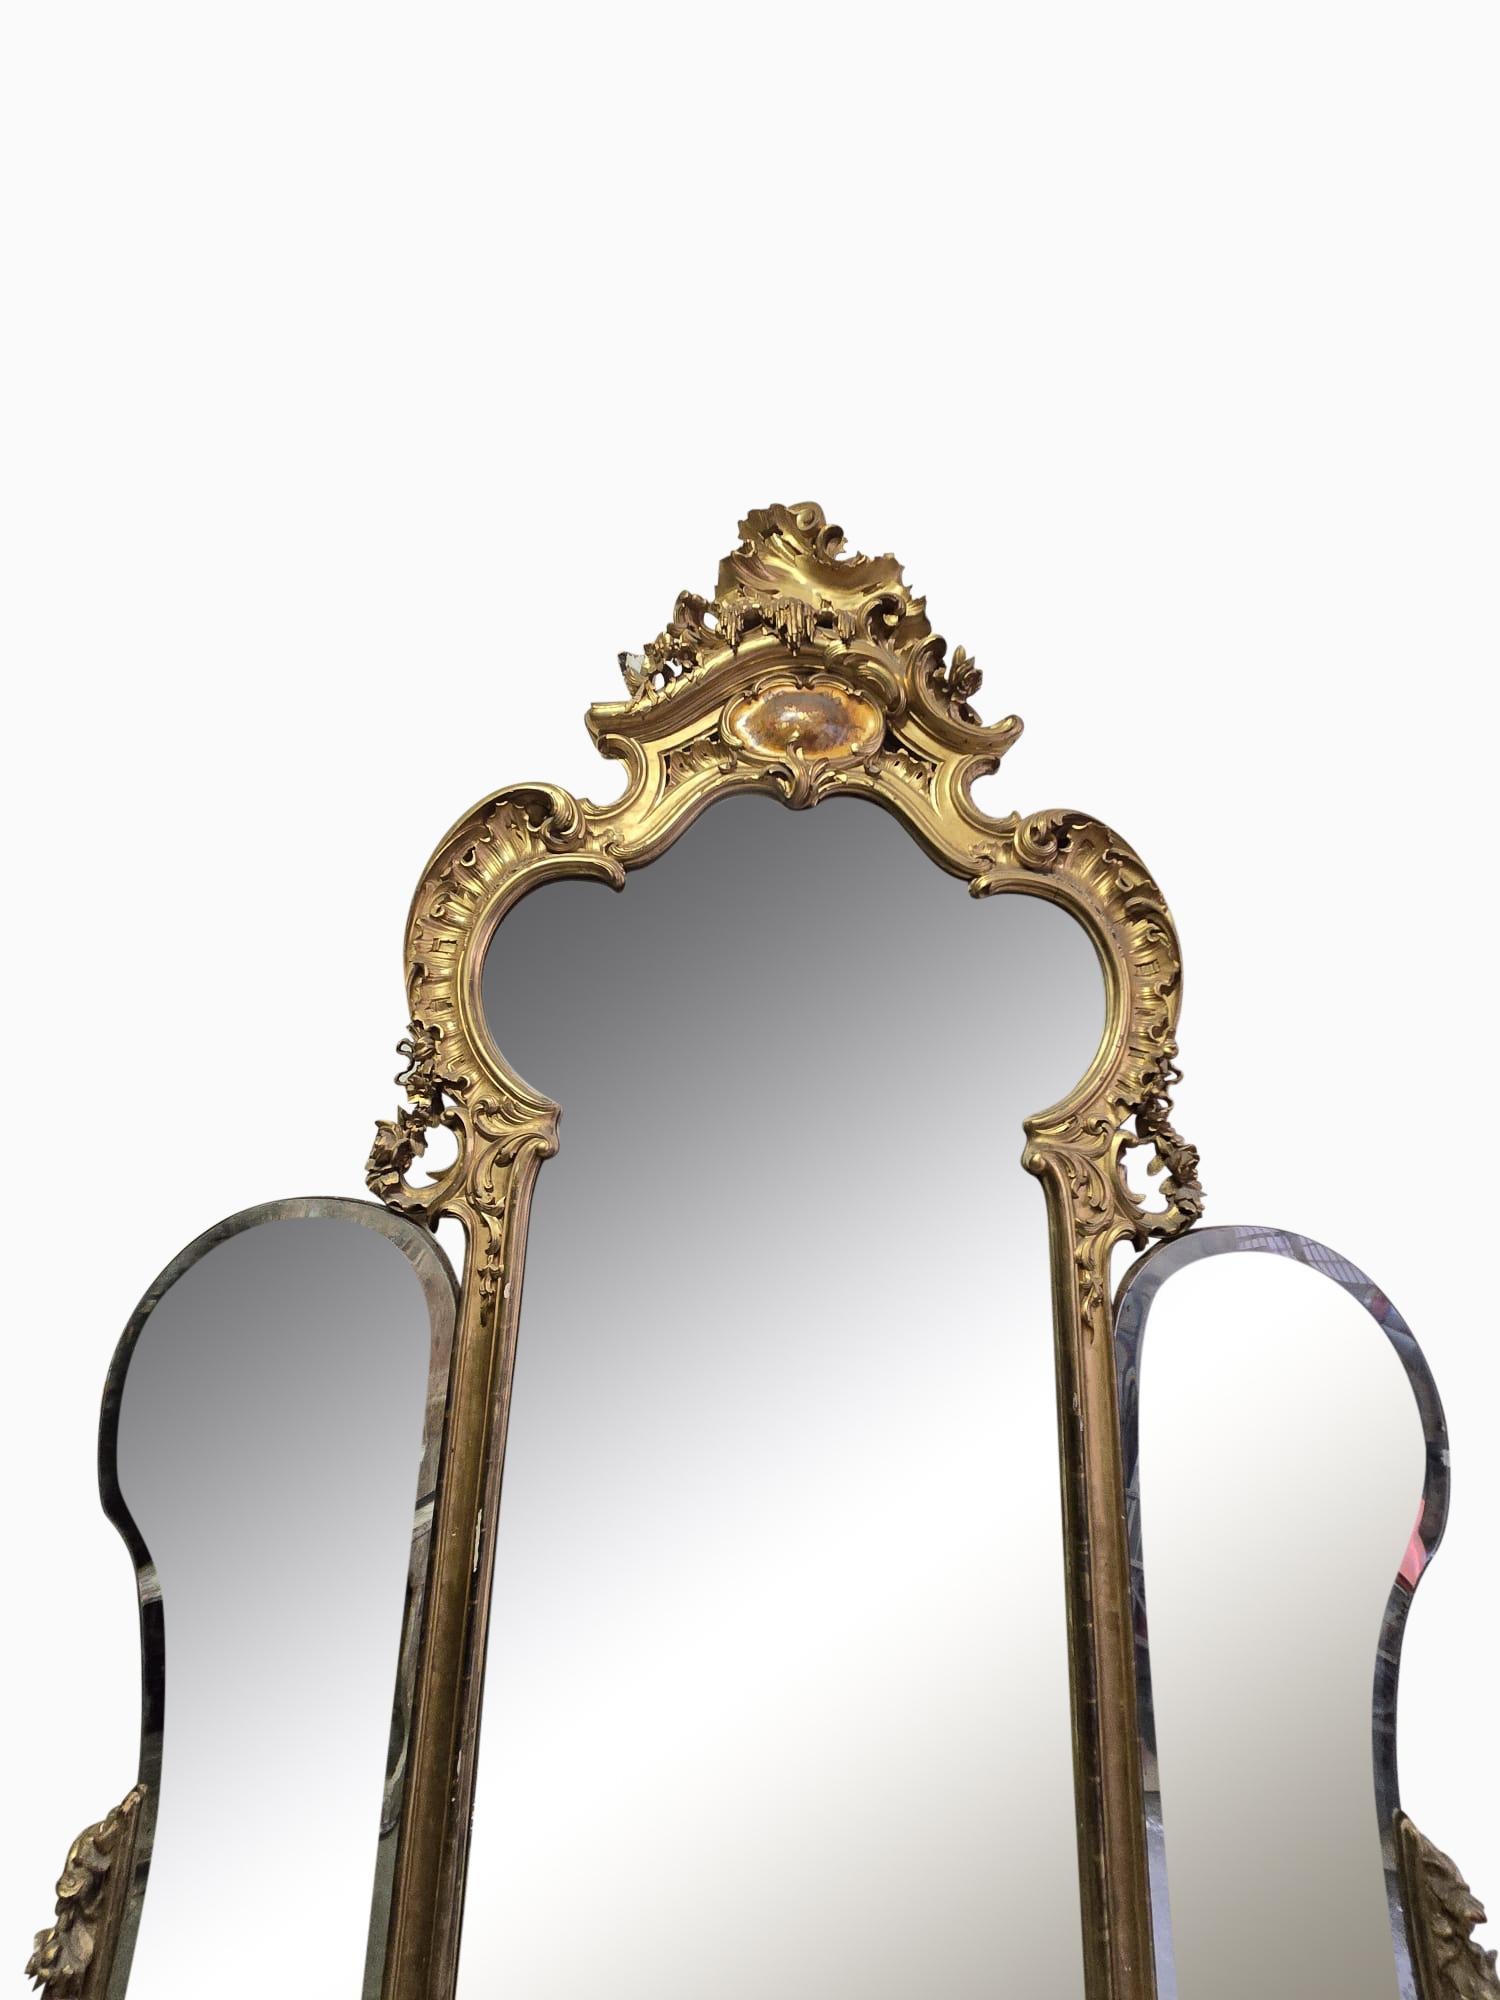 Tauchen Sie ein in die Eleganz des 19. Jahrhunderts mit unserem monumentalen französischen Spiegel aus vergoldetem Holz. Mit seinen Maßen von 300x170 cm ist dieser Spiegel mehr als nur Dekoration: Er ist ein Statement, das Geschichte und Raffinesse